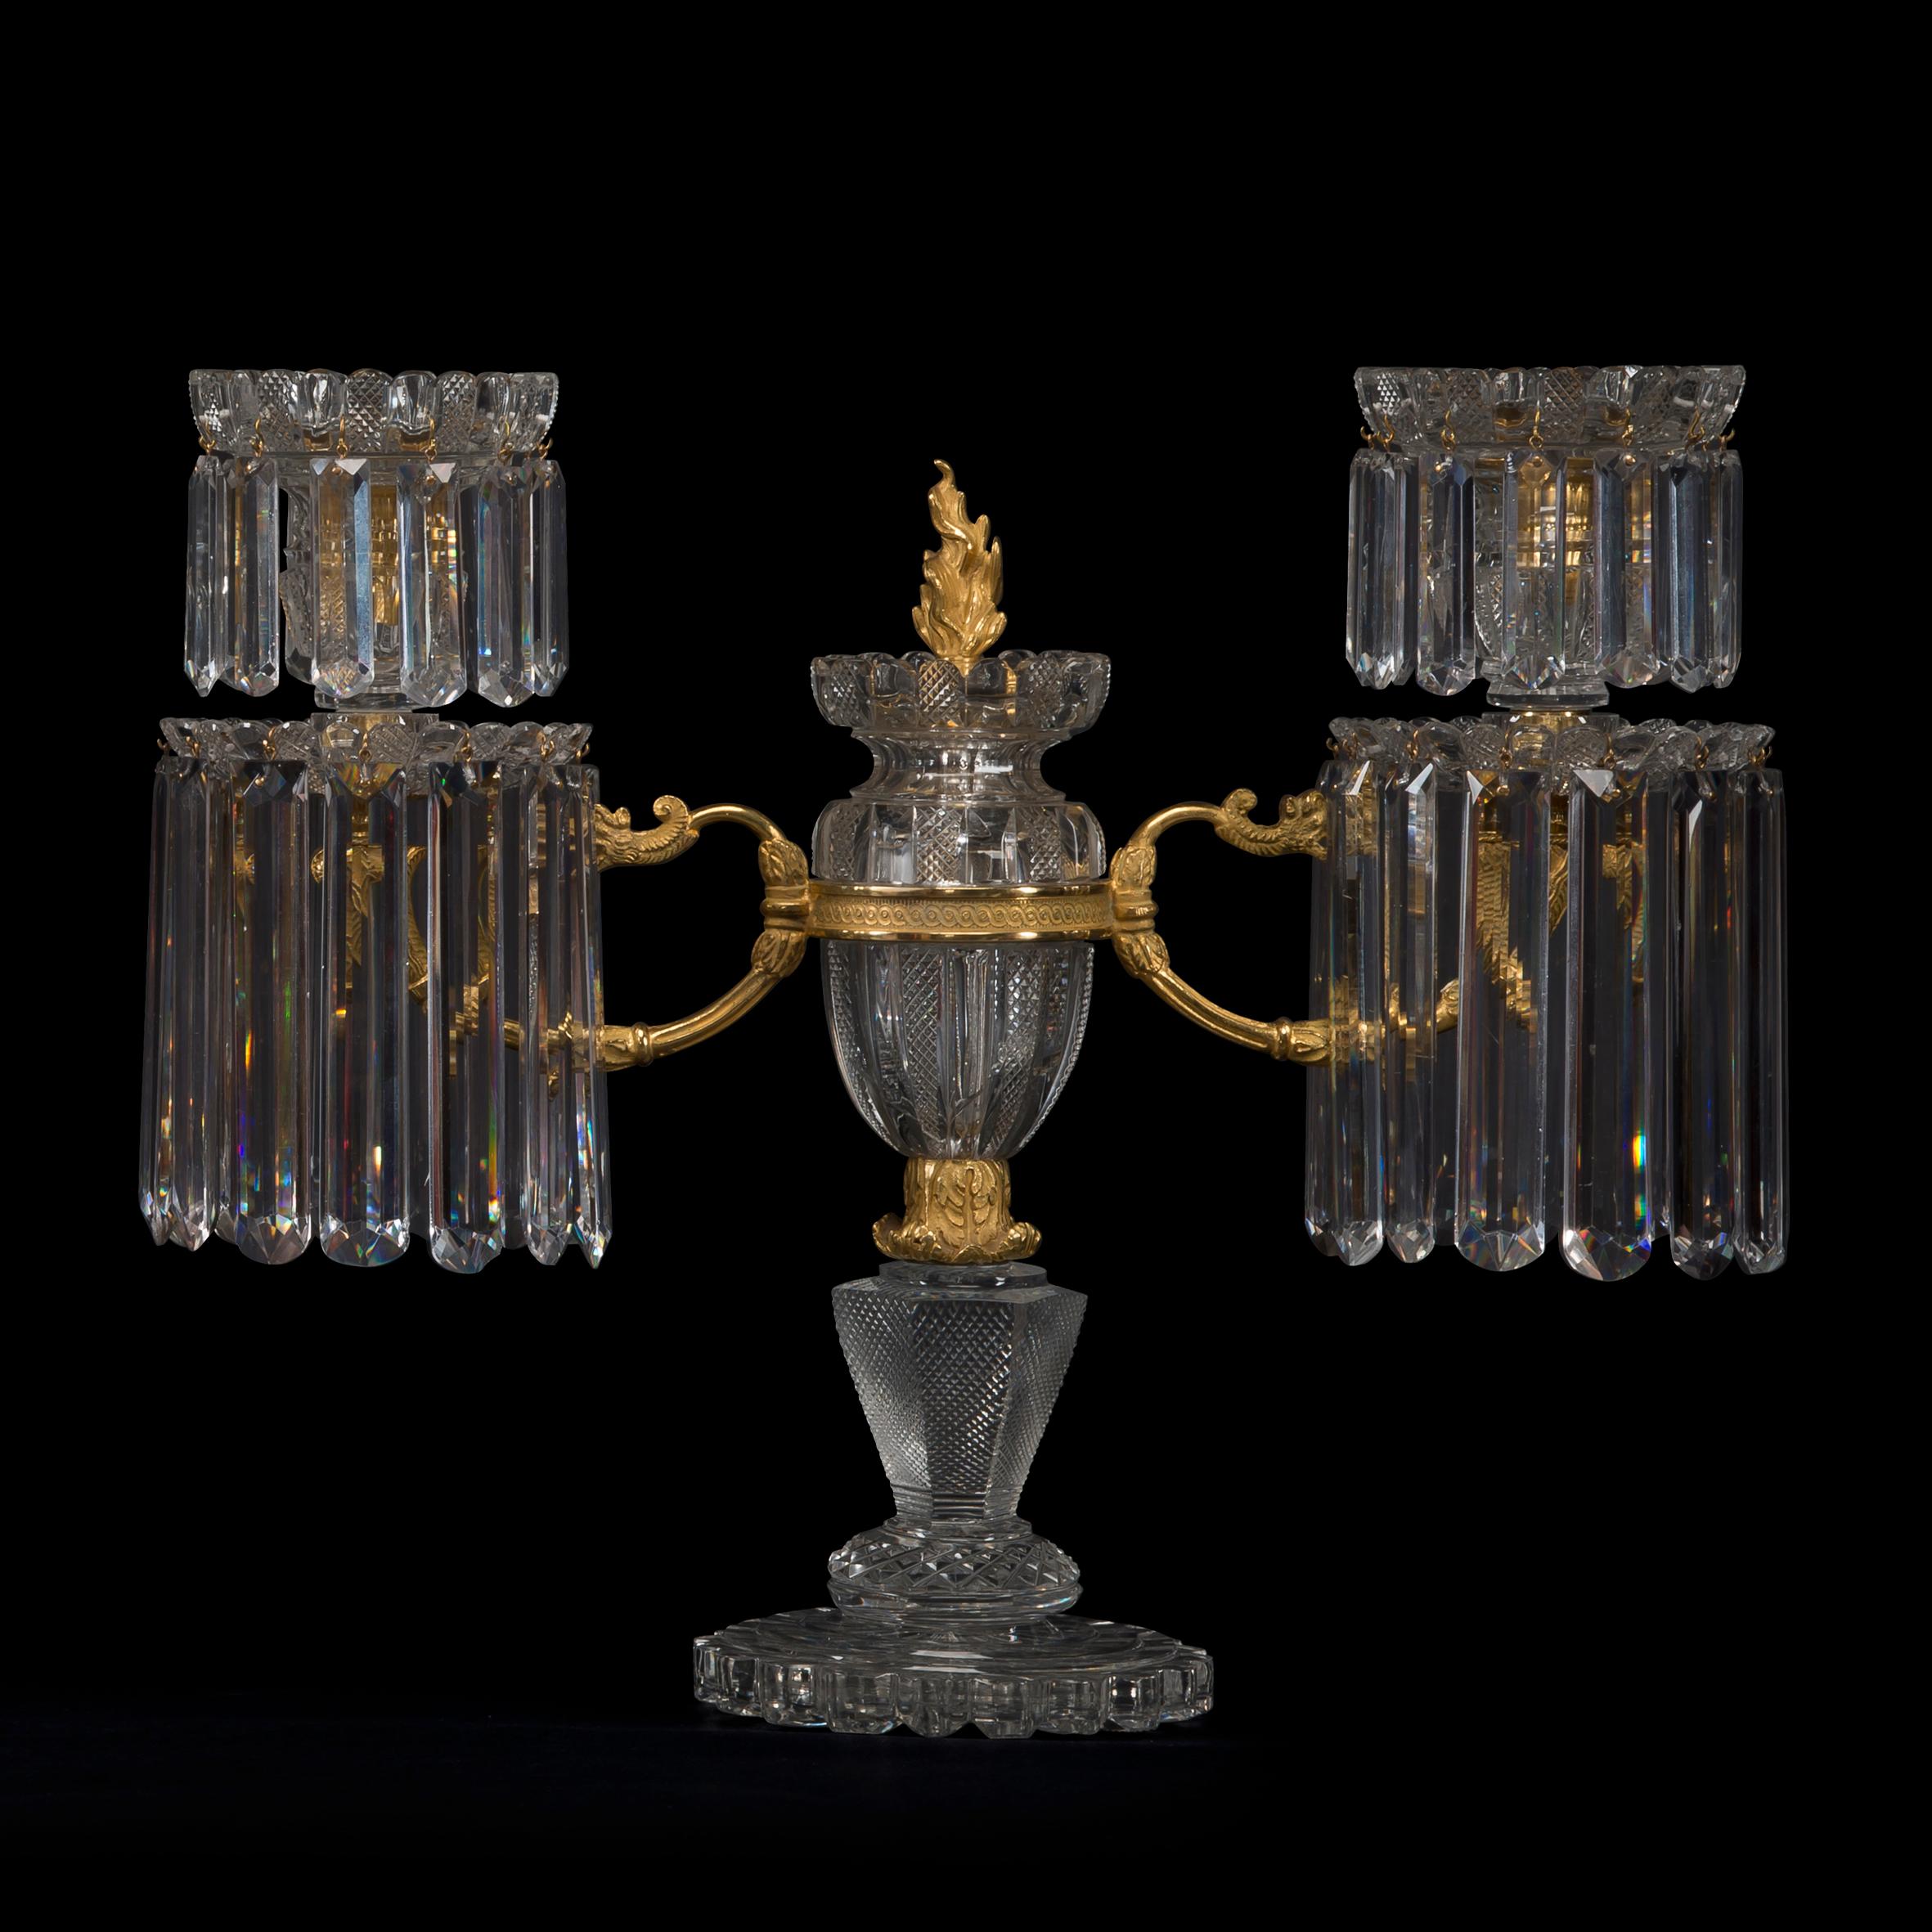 Une paire rare de candélabres Regency à deux lumières, montés en bronze doré, avec pilier et lime en verre taillé, par John Blades.

Le cabinet de John Blades a été enregistré pour la première fois dans le guide de Londres de 1783 au 5 Ludgate